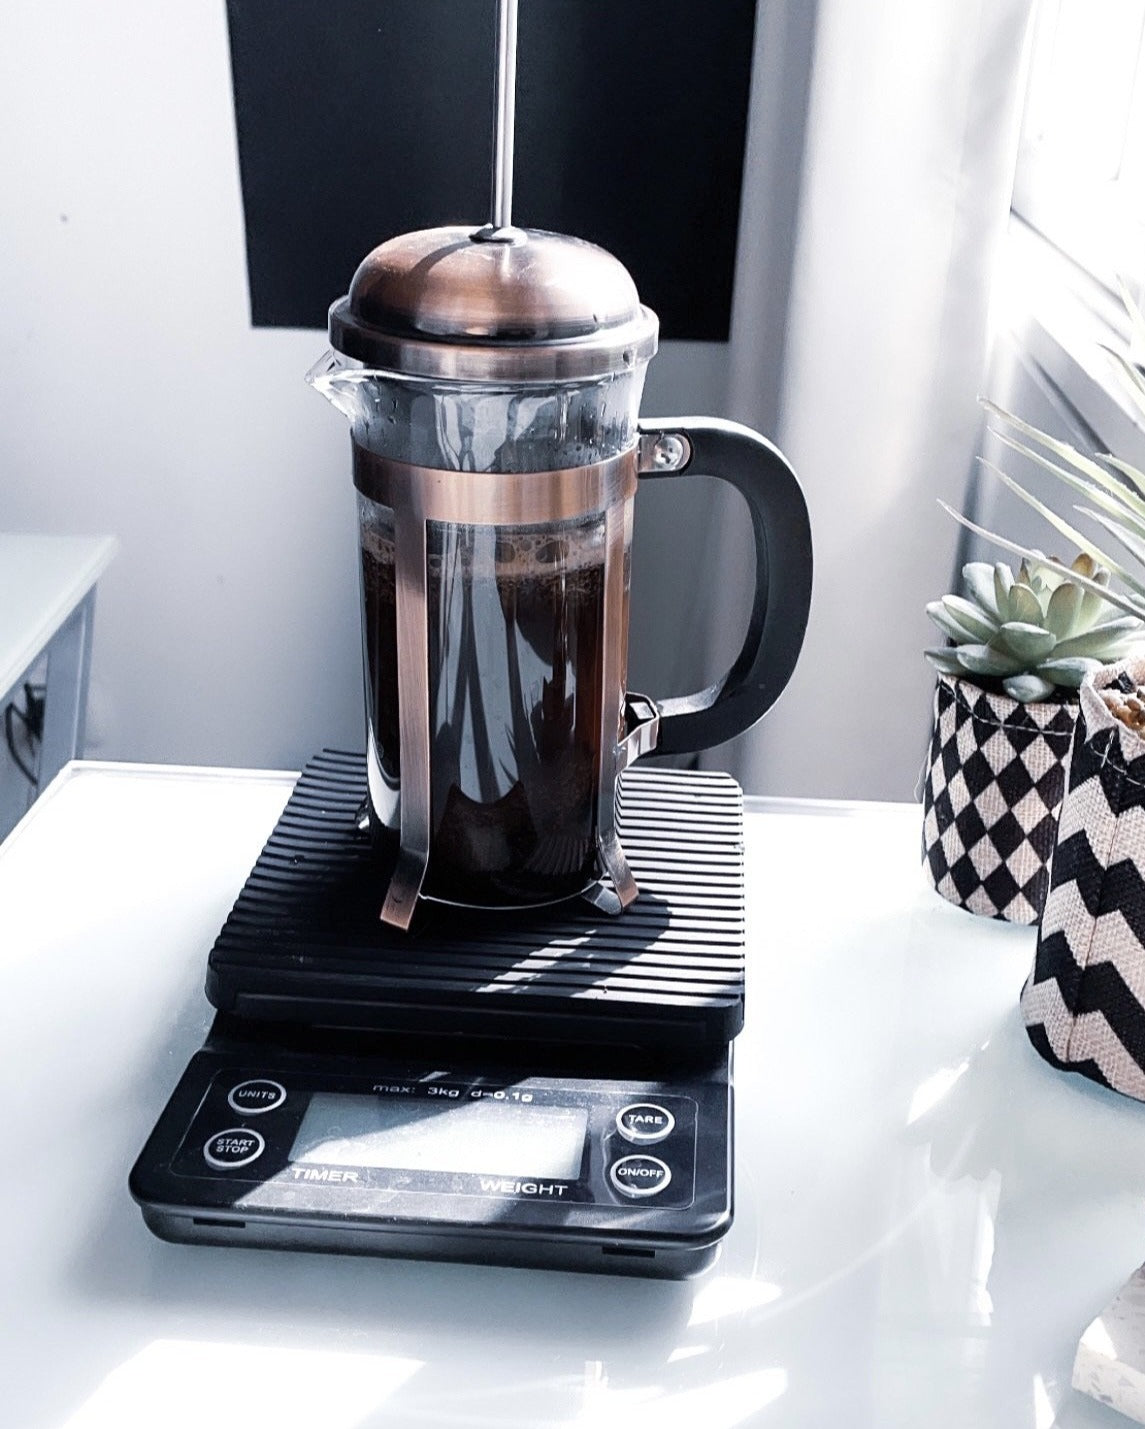 Báscula digital de precisión Coffee Barista Kitchen, 5 kg/0,1 g